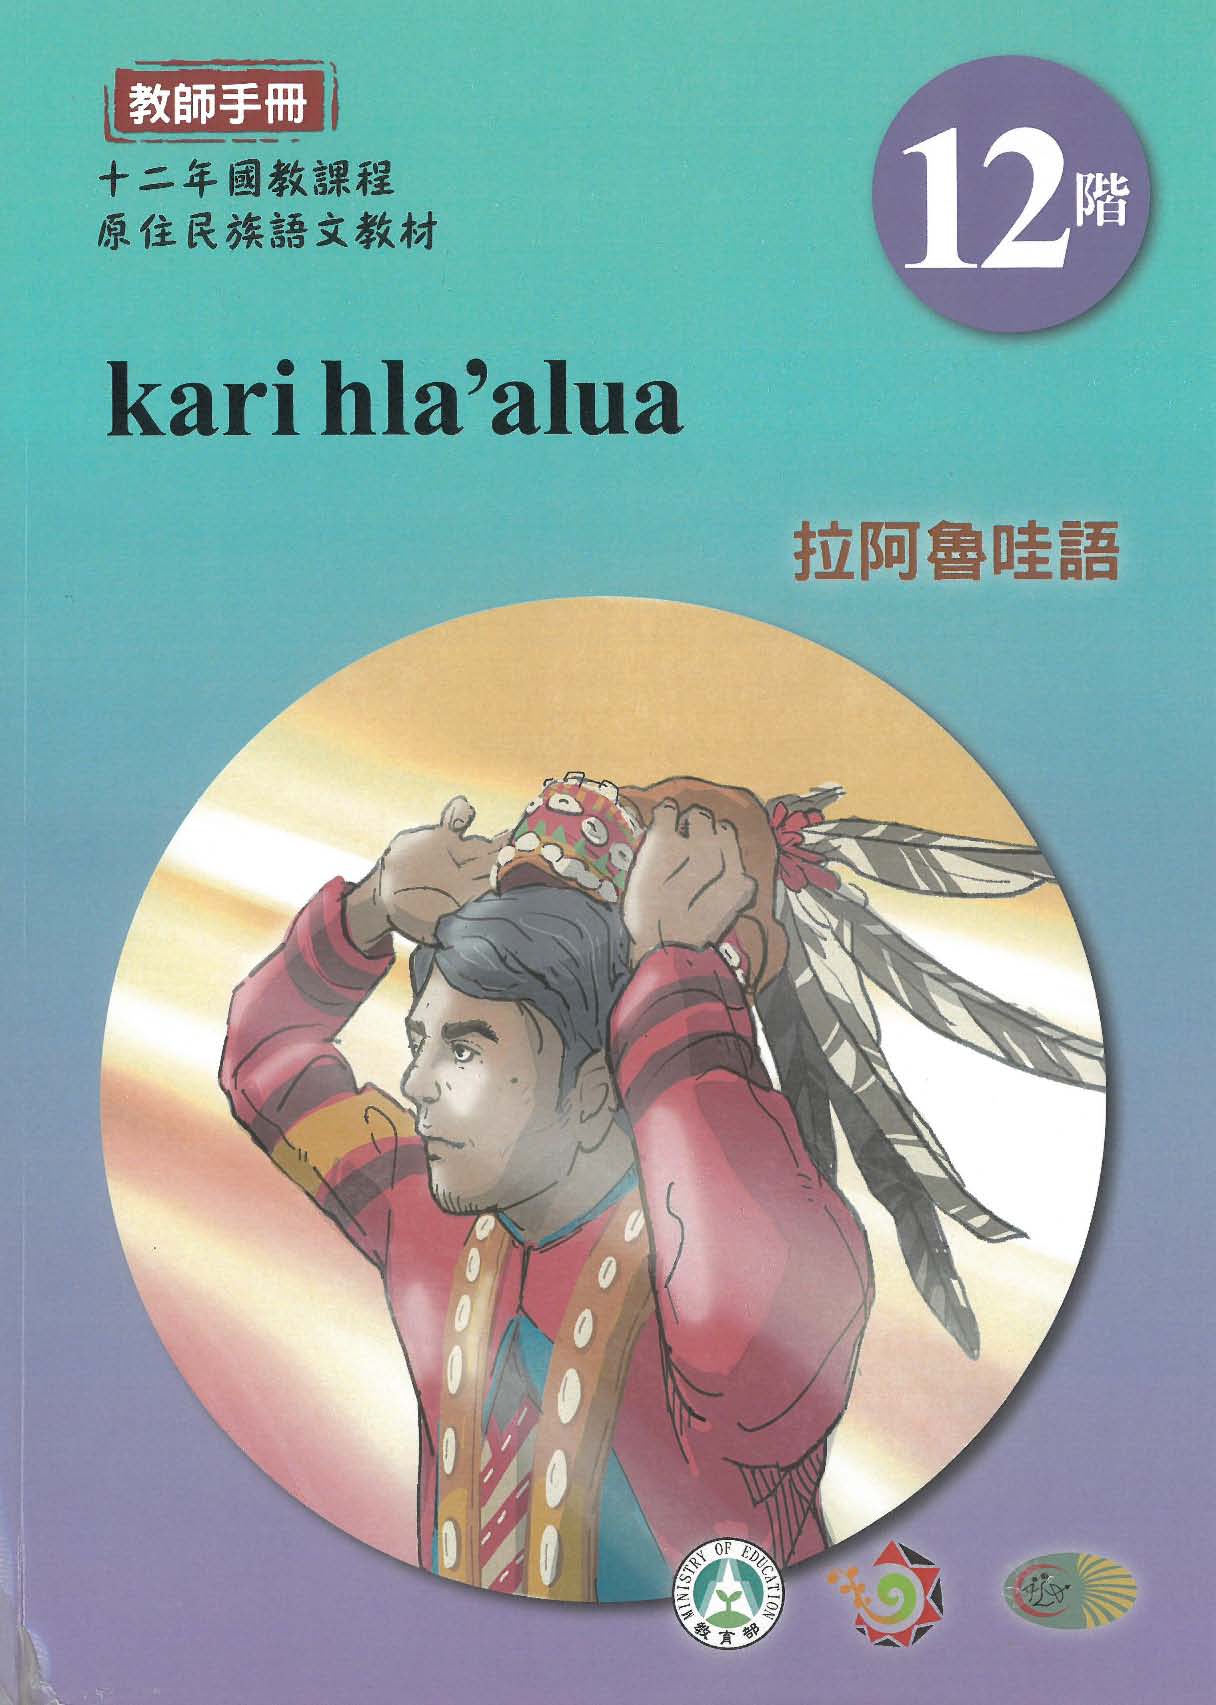 十二年國教原住民族語文教材 拉阿魯哇語 教師手冊 第12階